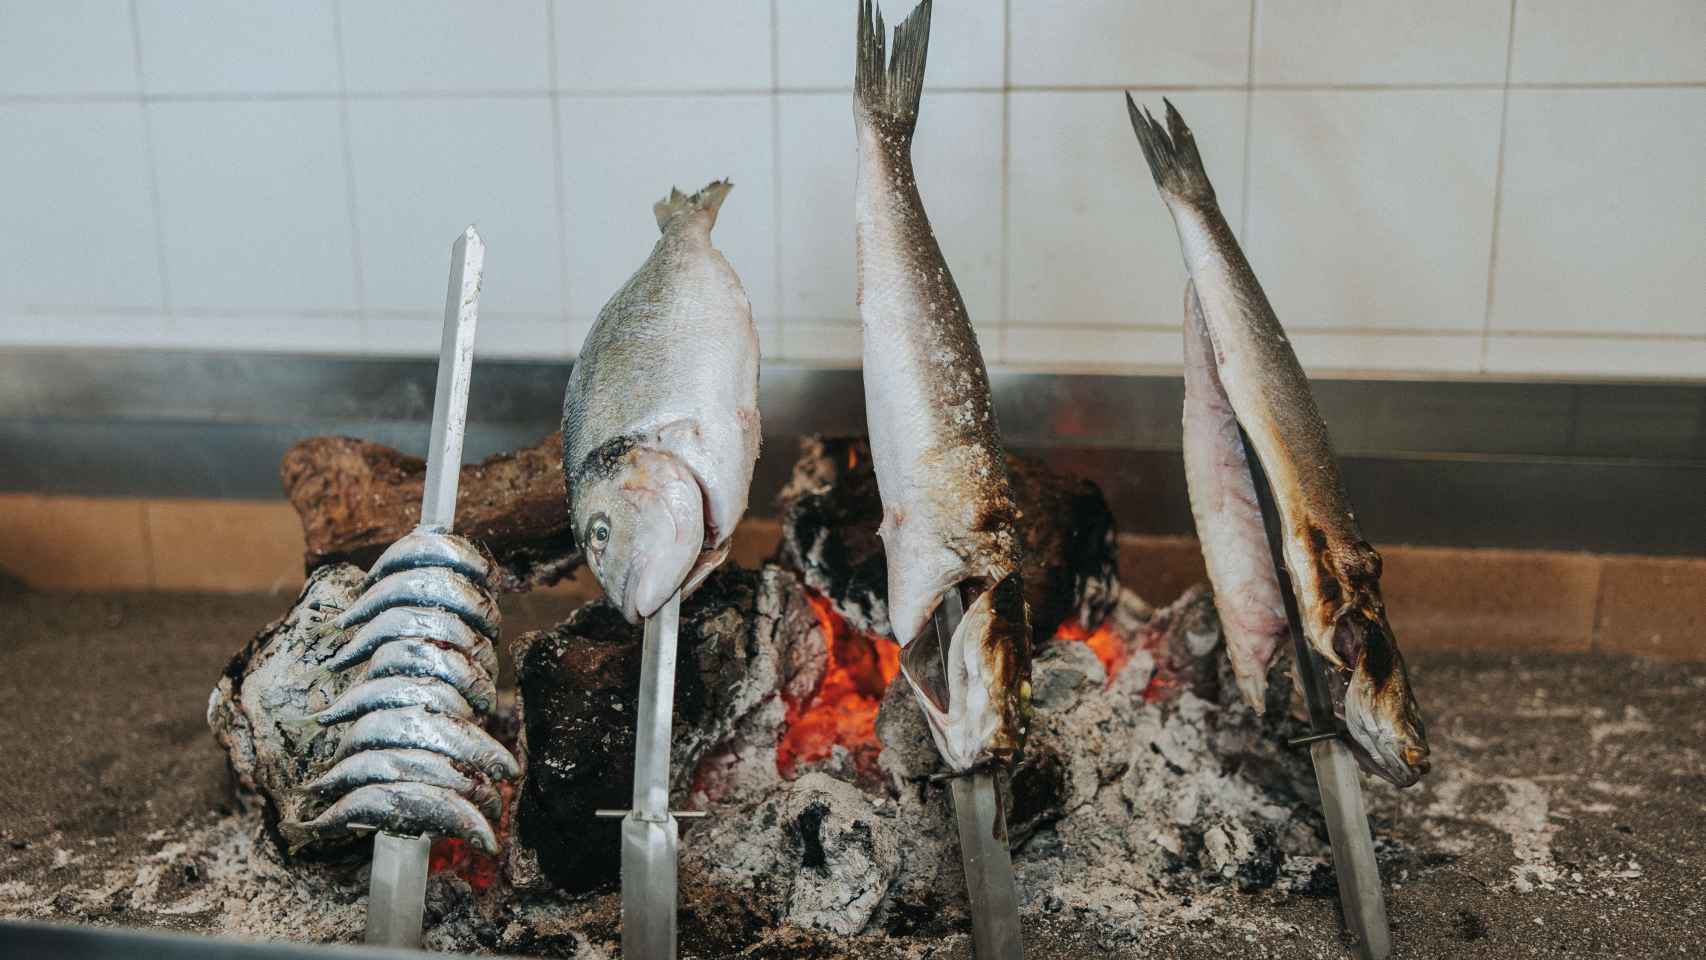 Pescados a la brasa cocinados en espetos